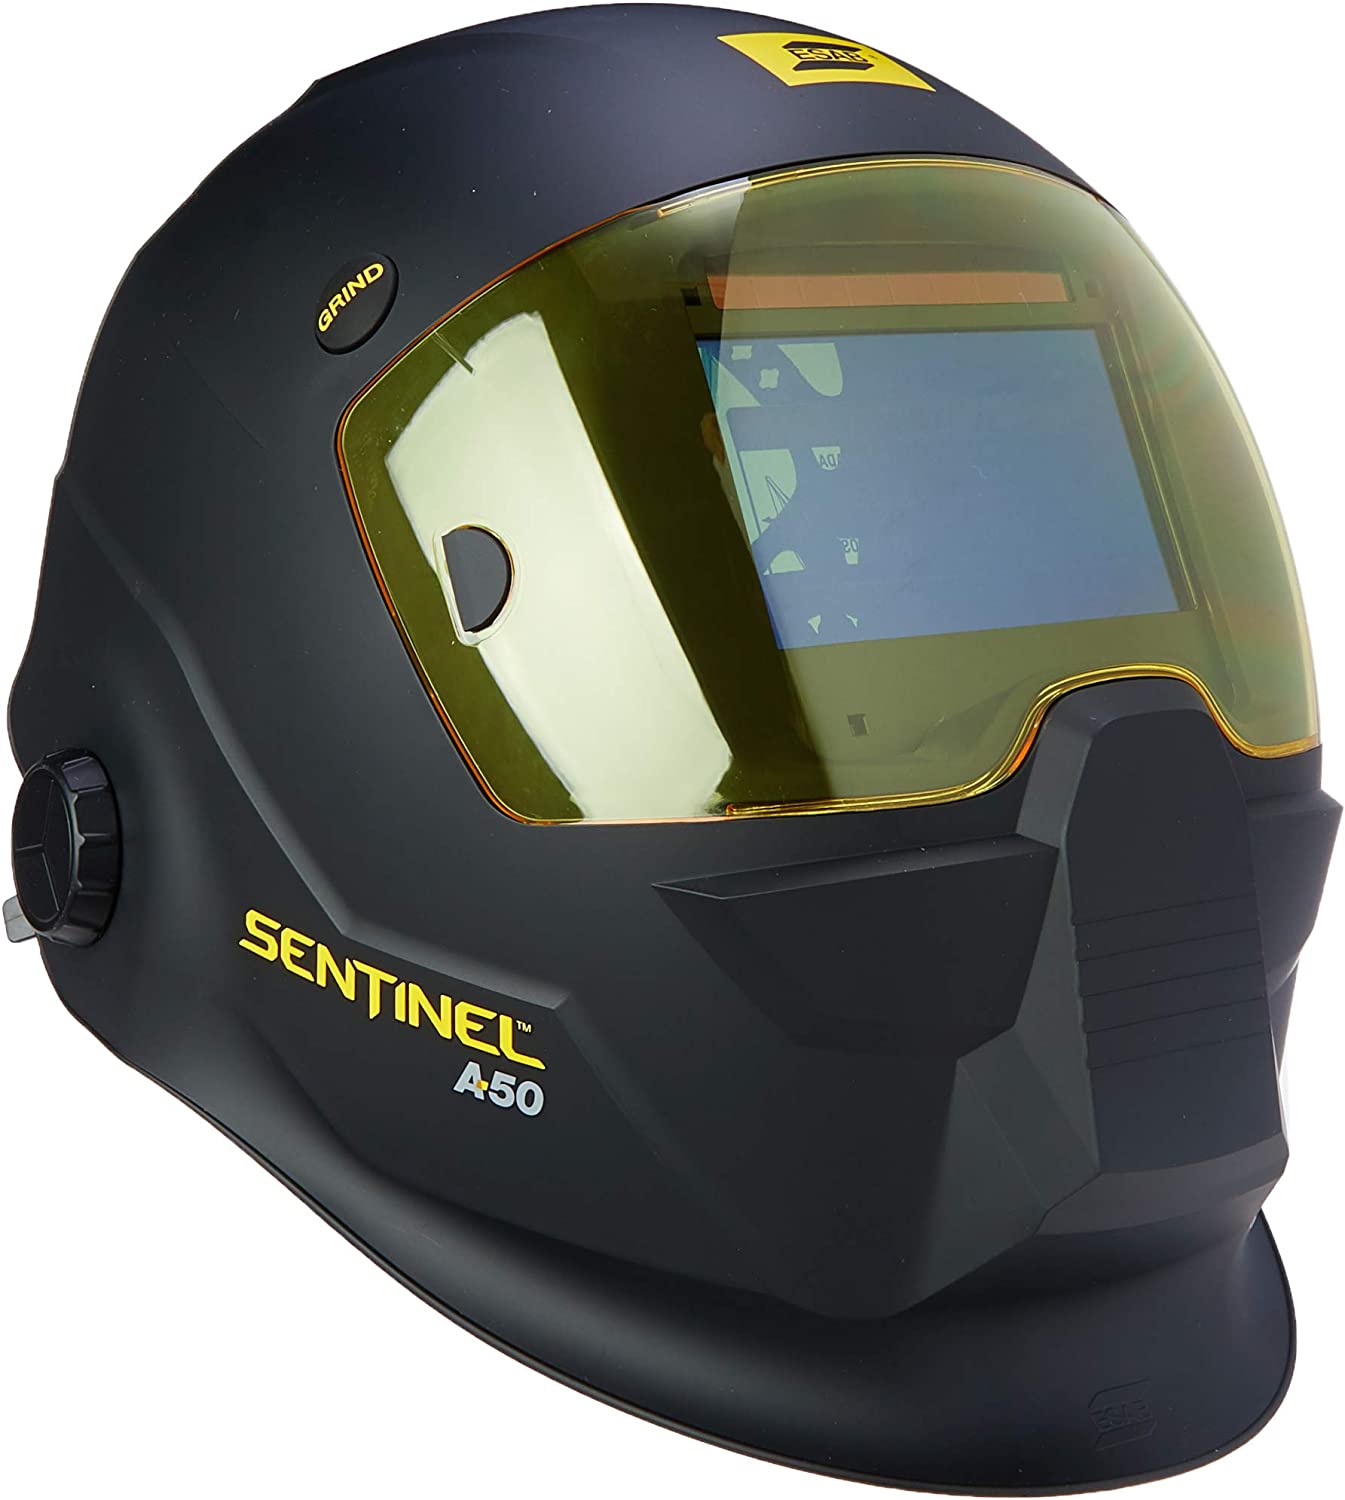 1673358546 Tips for choosing the best auto darkening welding helmet